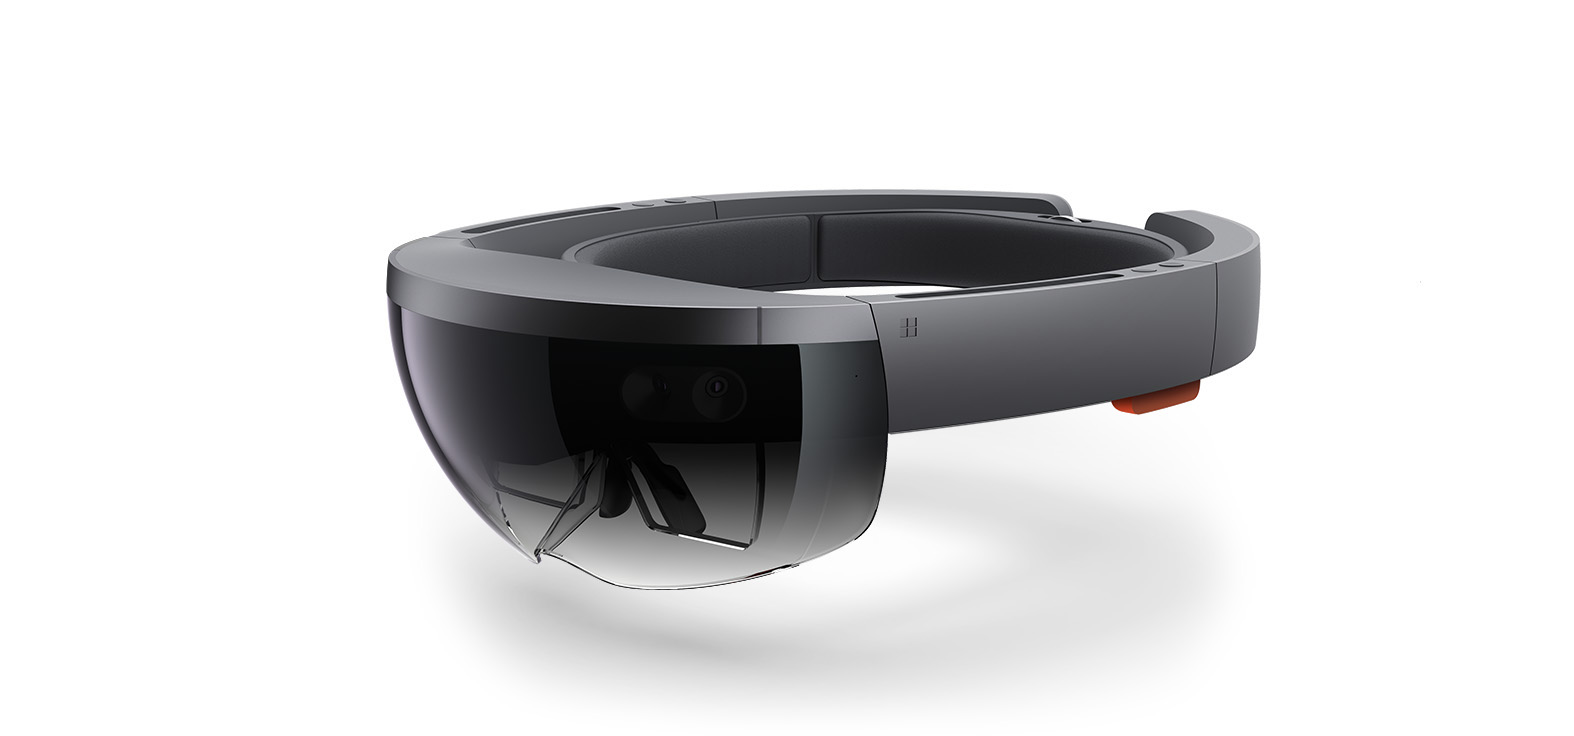 Details zu Microsoft-betriebenen VR-Brillen kommen im Dezember